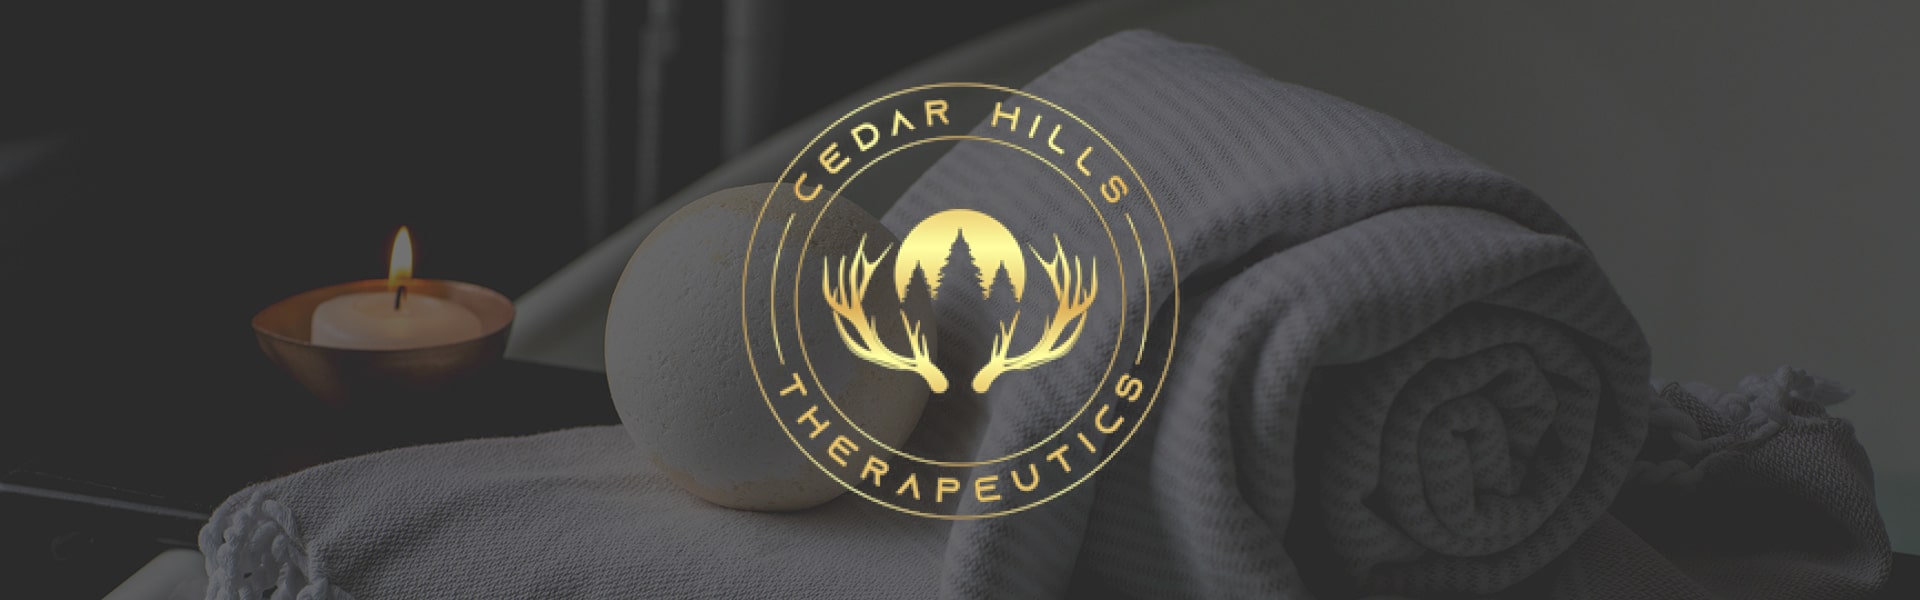 Cedar Hills Therapeutics-min